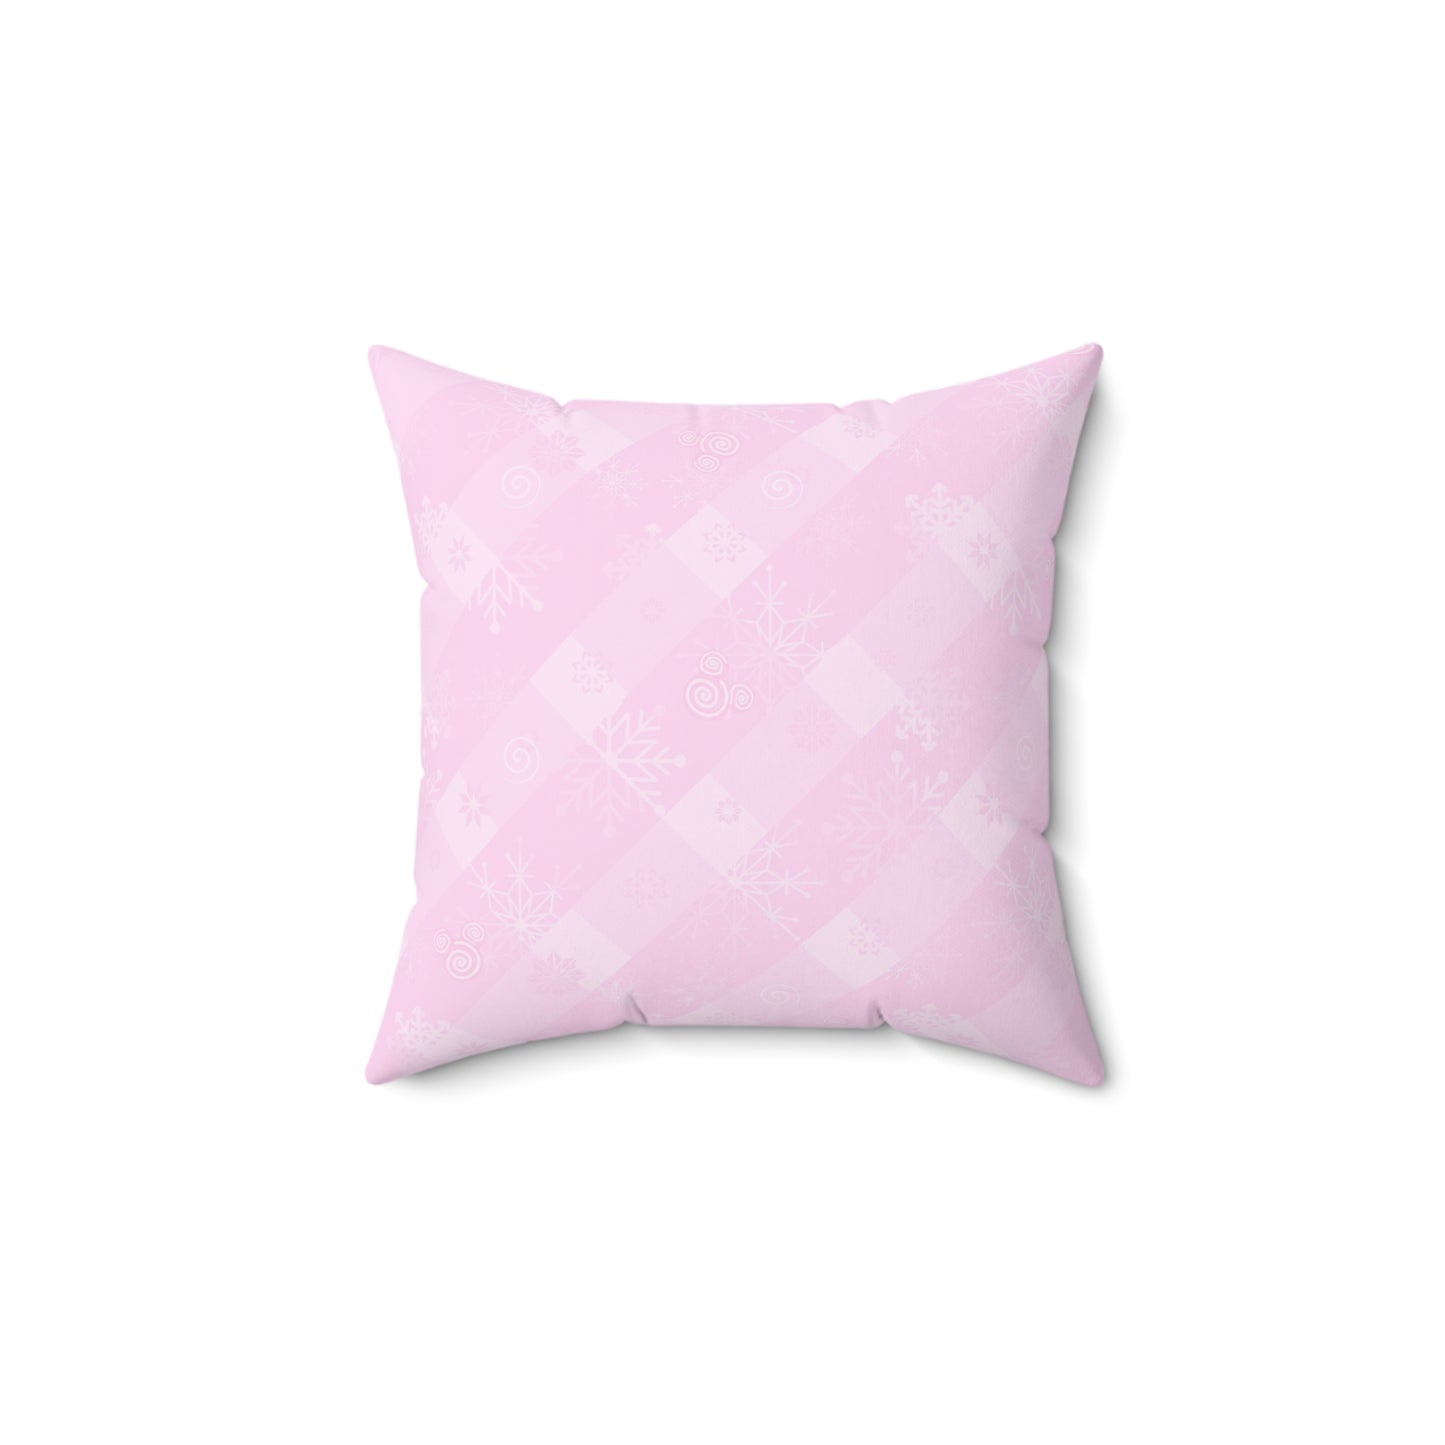 Liquid Mistletoe - Square Pillow